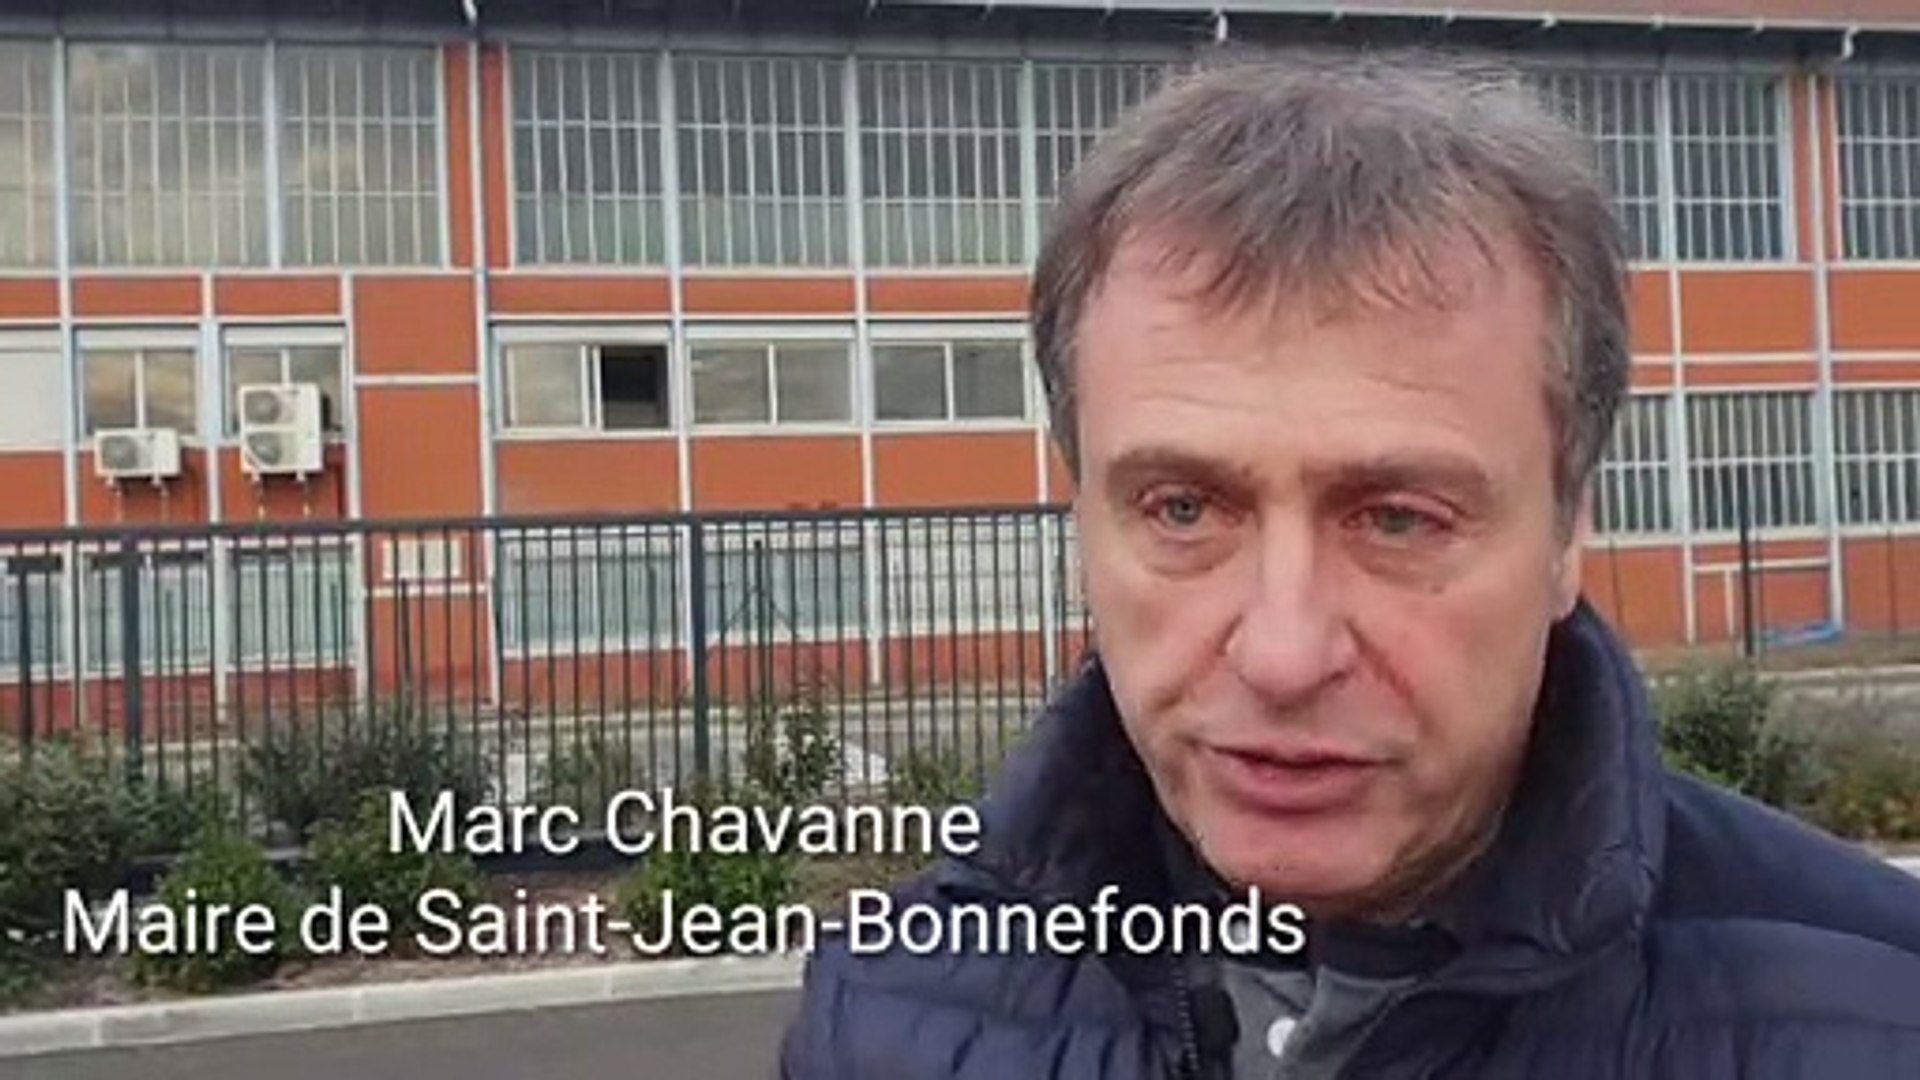 Marc Chavanne, le maire de Saint-Jean-Bonnefonds, défend le centre d'appel  de sa commune - Vidéo Dailymotion